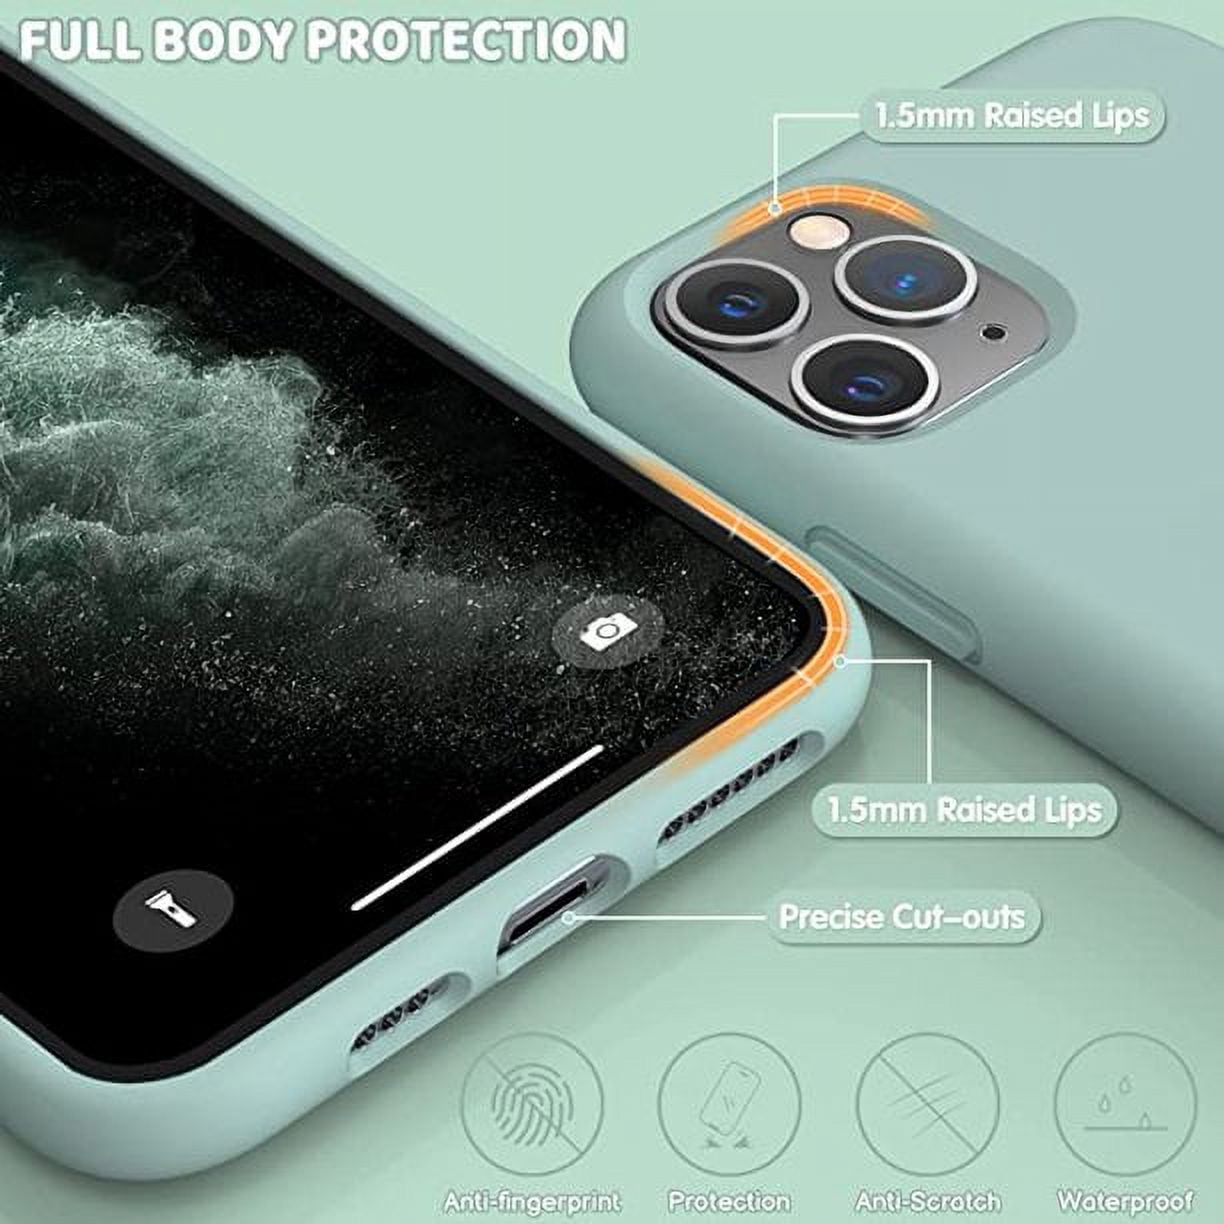 Liquid Silicone iPhone 11 Pro Max Case Black - Caseface